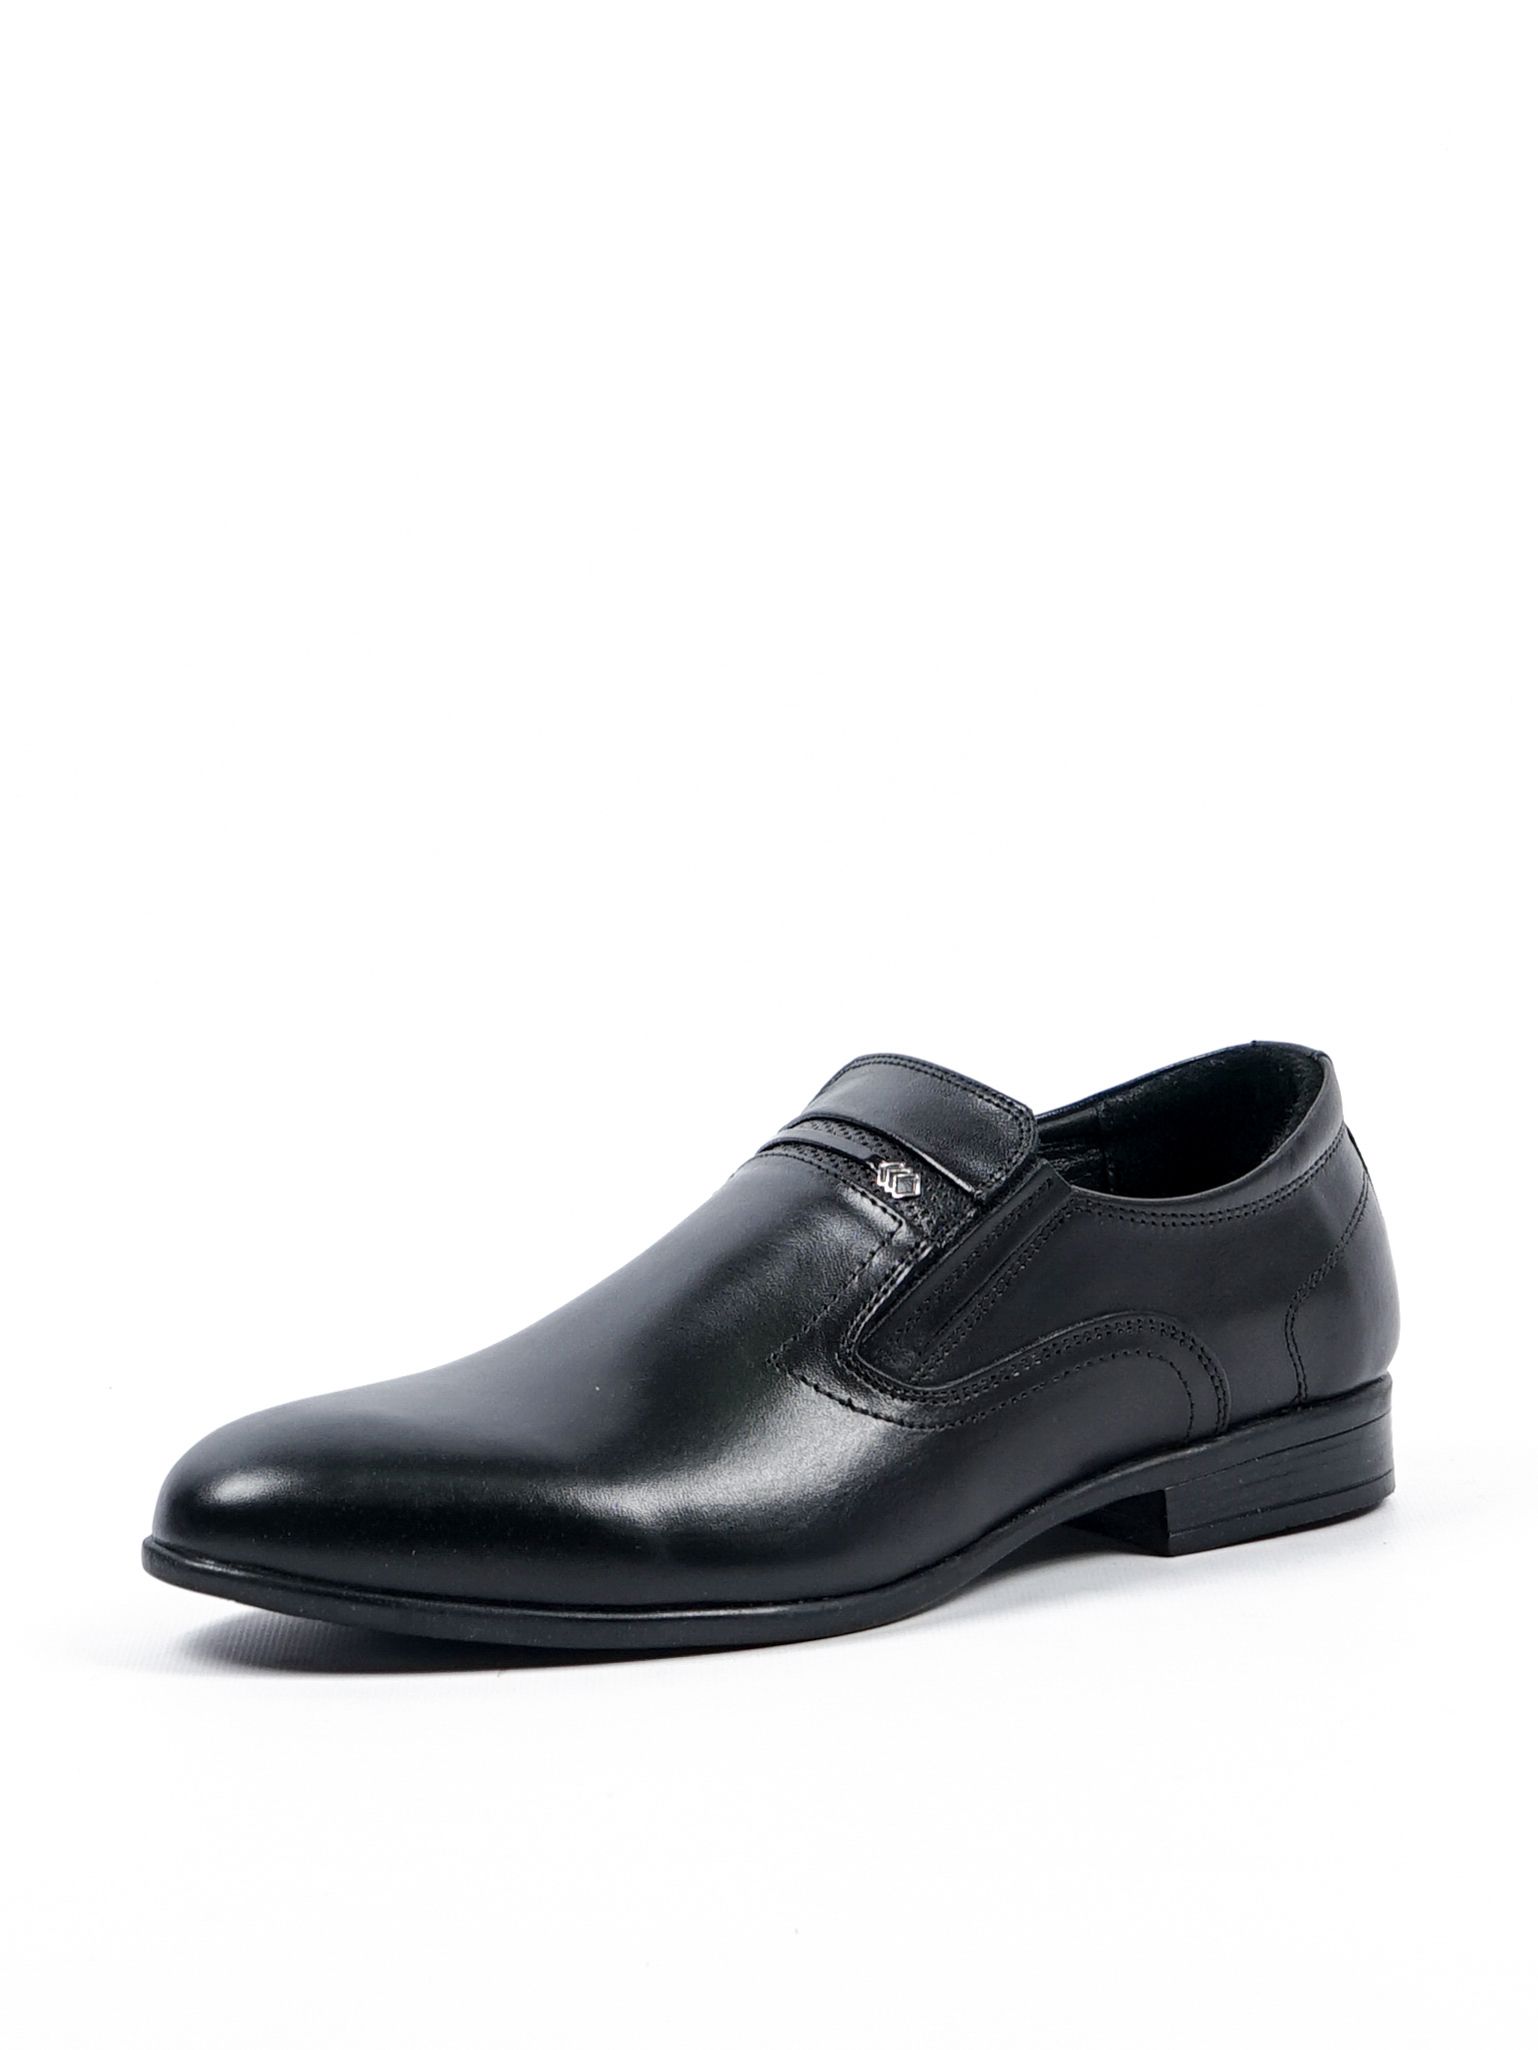 Туфли мужские Comfort Shoes 1099 черные 44 RU